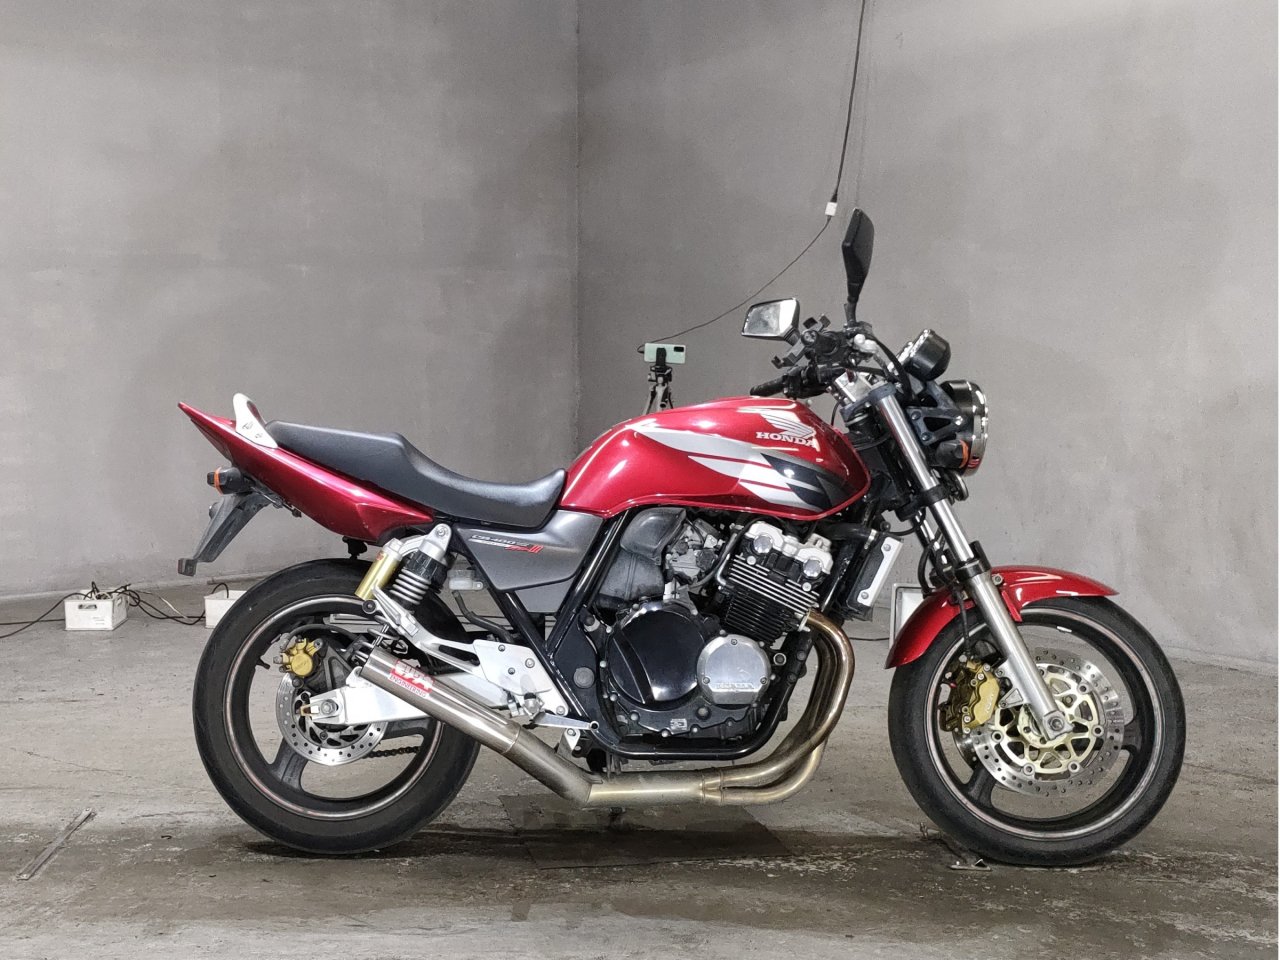 Honda CB400SF VTEC spec 3 - Adamoto - Motorcycles from Japan